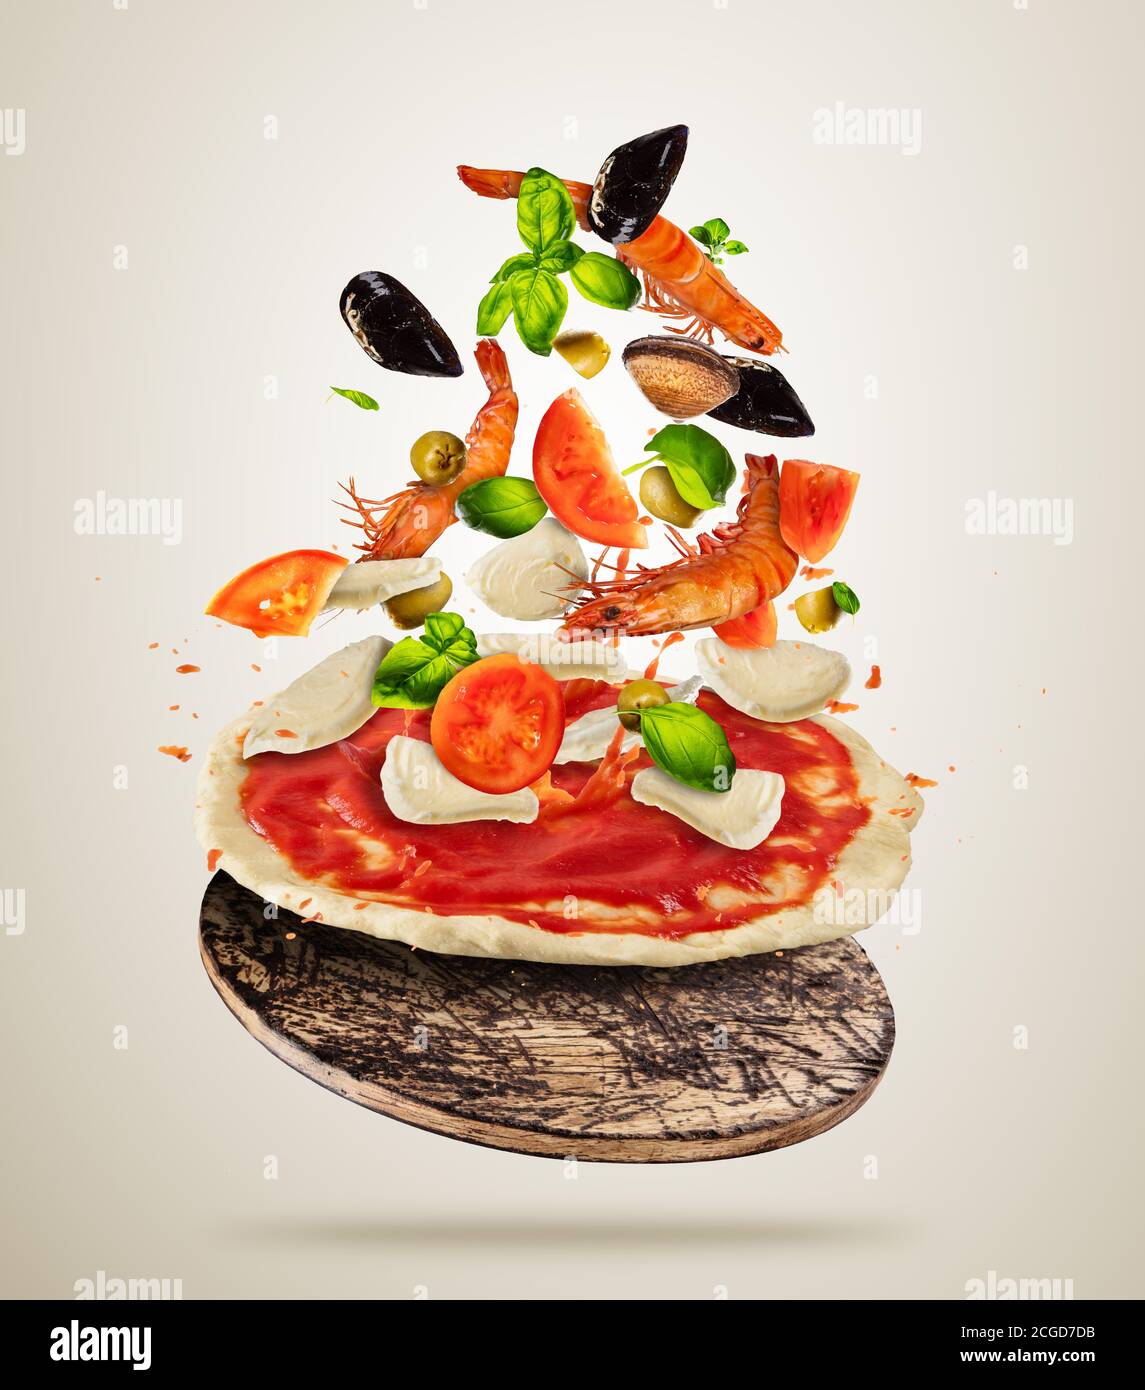 Konzept der fliegenden Gemüse-und Meeresfrüchte-Zutaten mit Pizzateig, isoliert auf grauem Hintergrund. Zubereitung von Speisen, frische Mahlzeit bereit zum Kochen. Bsp Stockfoto